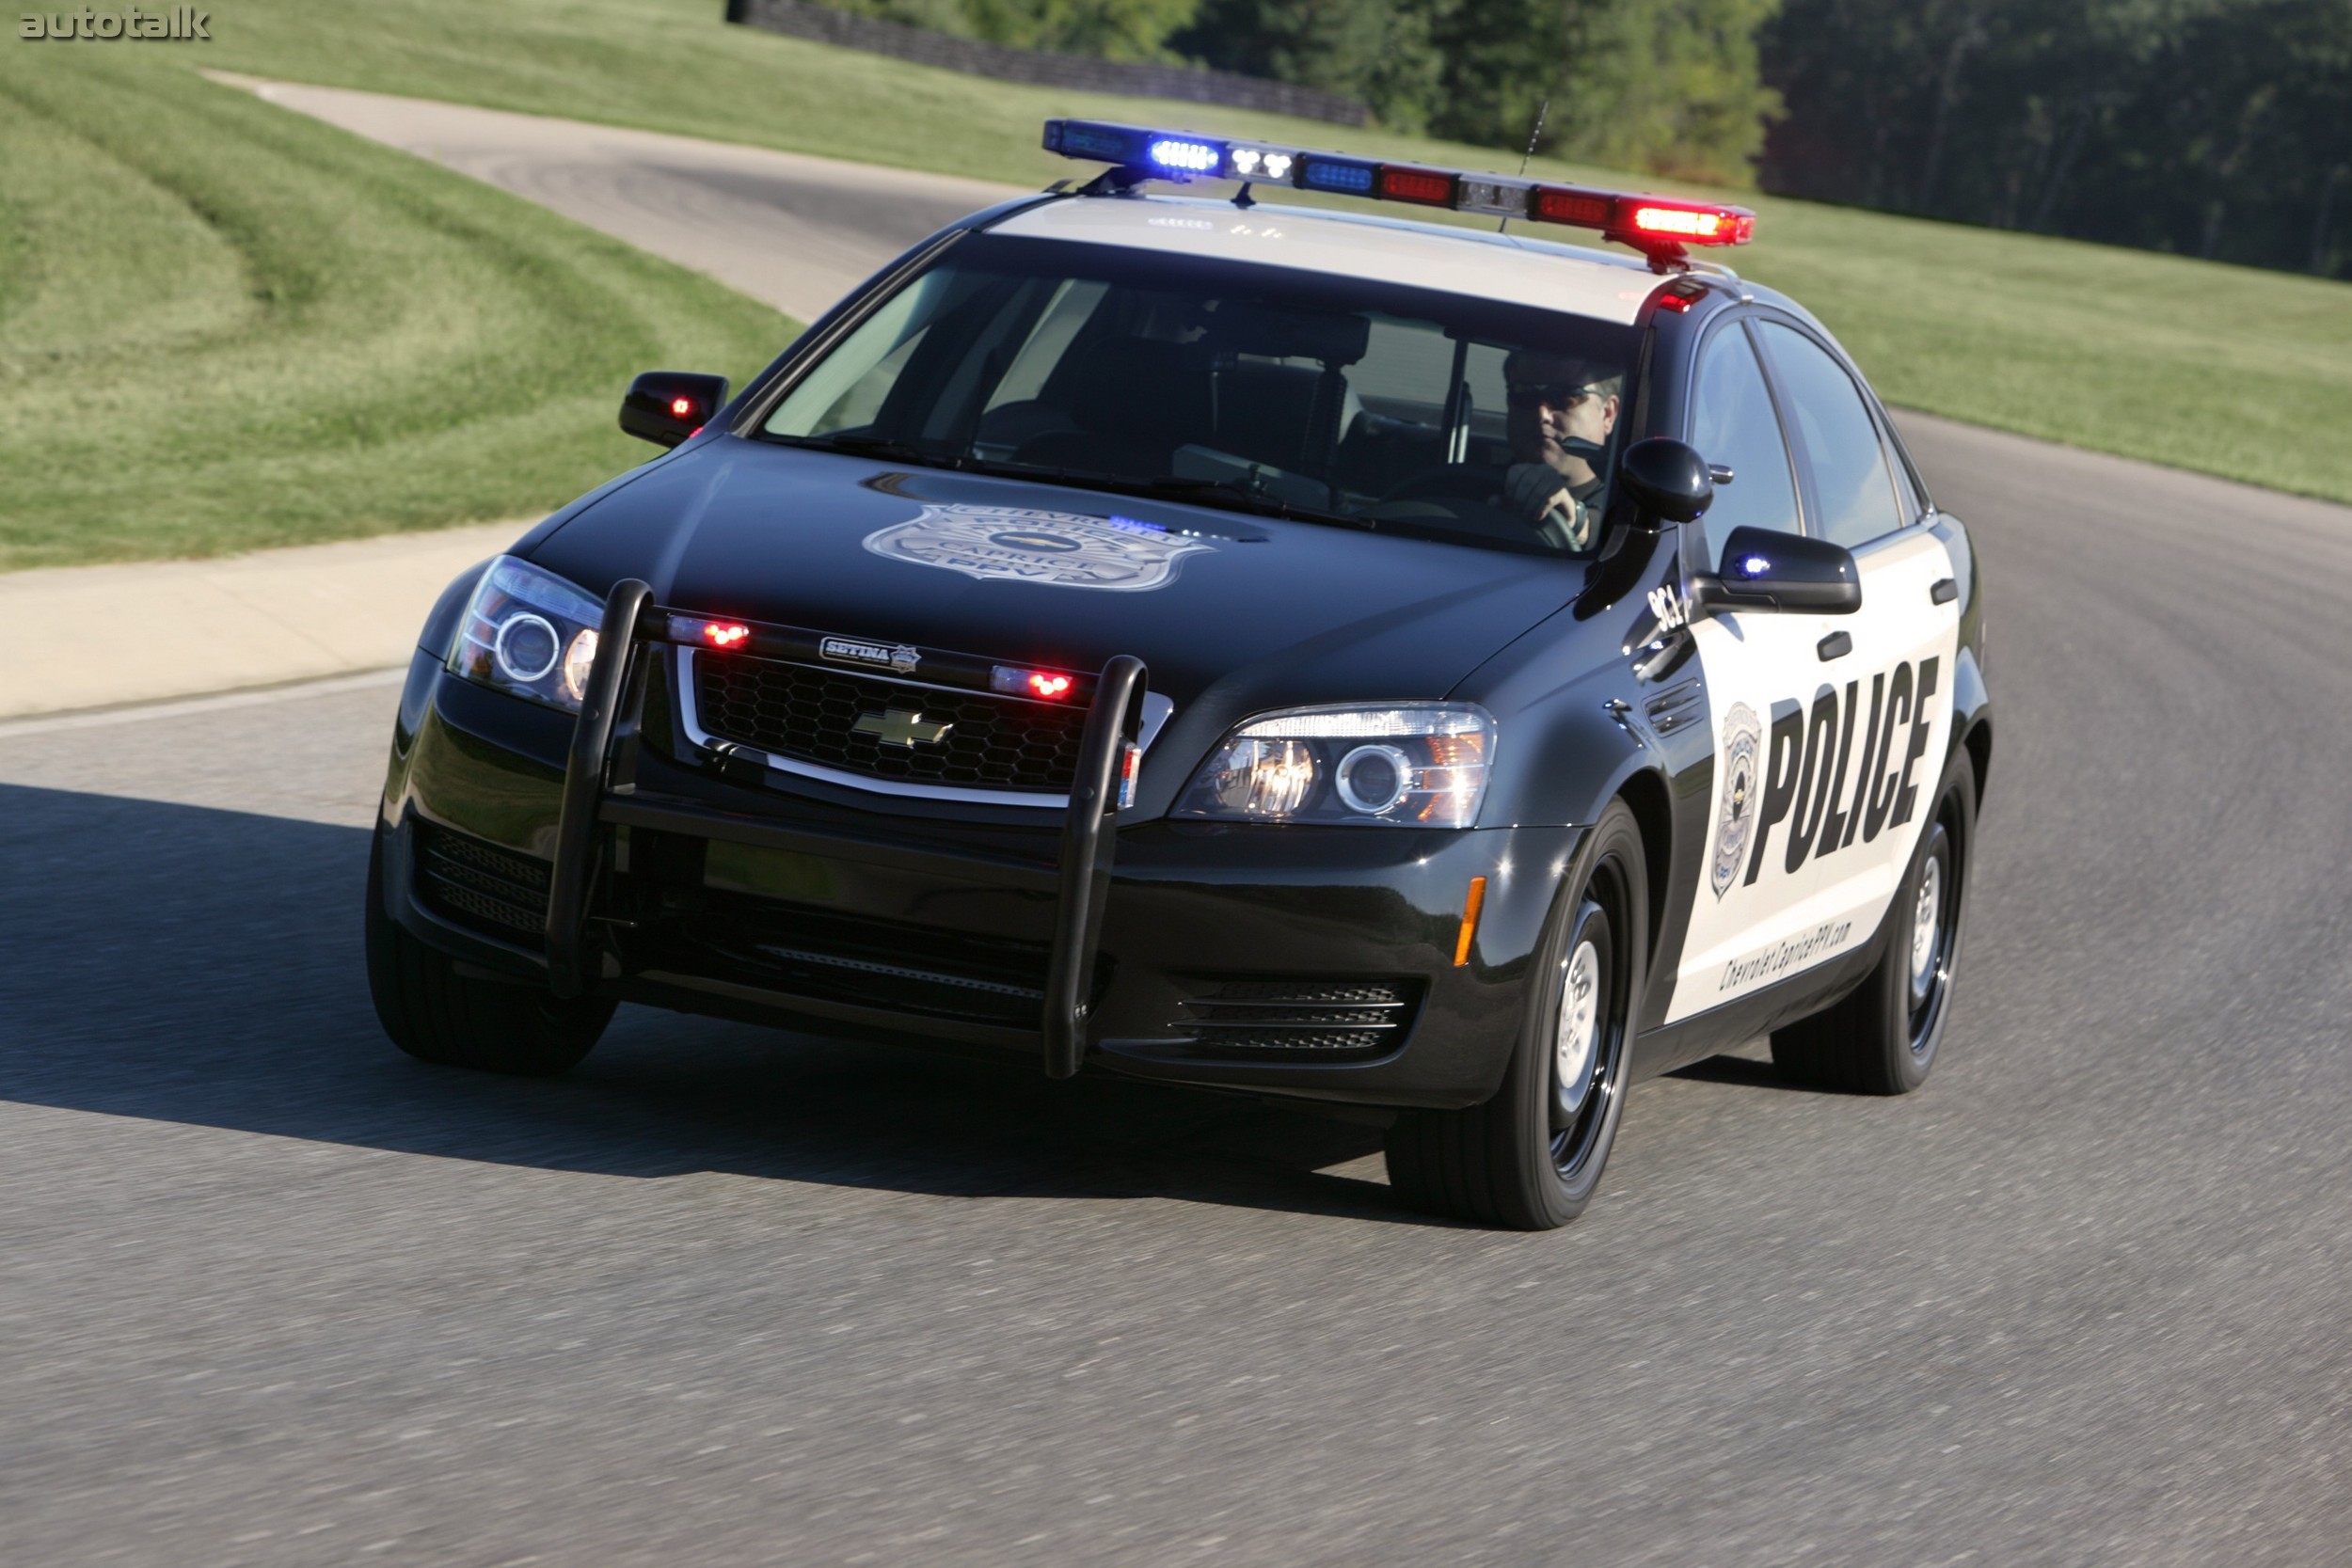 Хочу полицейскую машину. Chevrolet Caprice Police 2010. Chevrolet Caprice 2006 Police. Chevrolet Caprice 2015 Police. Шевроле Каприс полиции США.